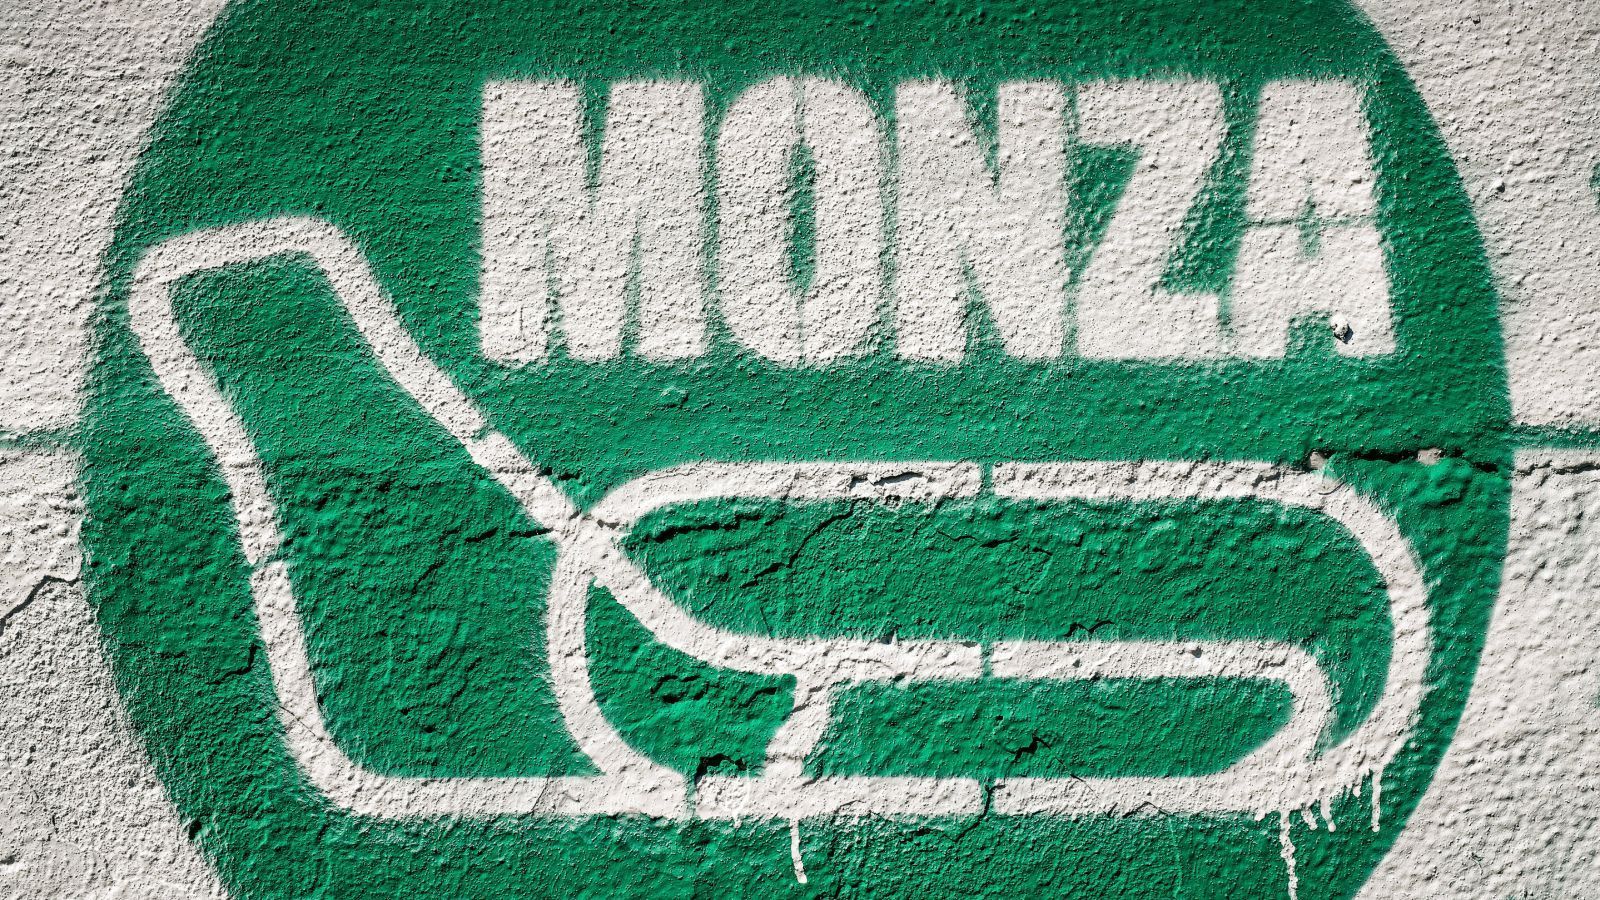 
                <strong>Monza (18.06. bis 20.06.) - Sauschnell, laut und idyllisch gelegen</strong><br>
                Monza (5,793 km), exakter der Autodromo Nazionale di Monza, ist nicht nur eine der berühmtesten Rennstrecken der Welt, sondern auch die drittälteste überhaupt und dient unter anderem der Formel-1 als Zuhause für den Großen Preis von Italien. Idyllisch gelegen im königlichen Park nahe Mailand ist es mit besagter Idylle allerdings rasch vorbei, wenn der Rennzirkus hier aufschlägt. Monza gilt als schnellste – und wenn man die Anwohner fragt – auch als lauteste Rennstrecke weltweit. Genau richtig für die neue DTM also, die manch einer schon als schnellste GT3-Rennserie weltweit preist.
              